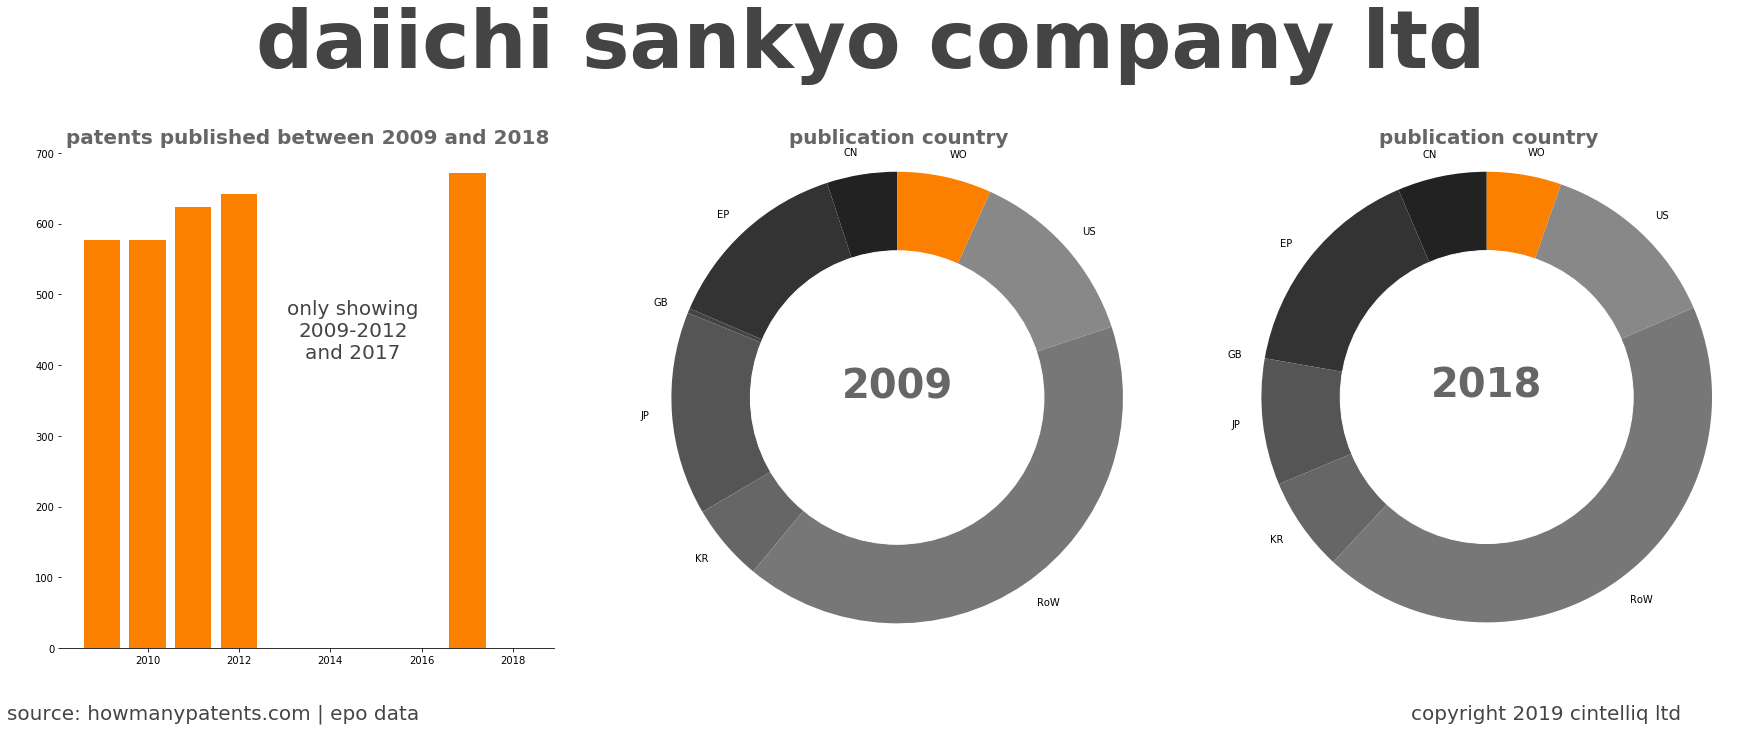 summary of patents for Daiichi Sankyo Company Ltd